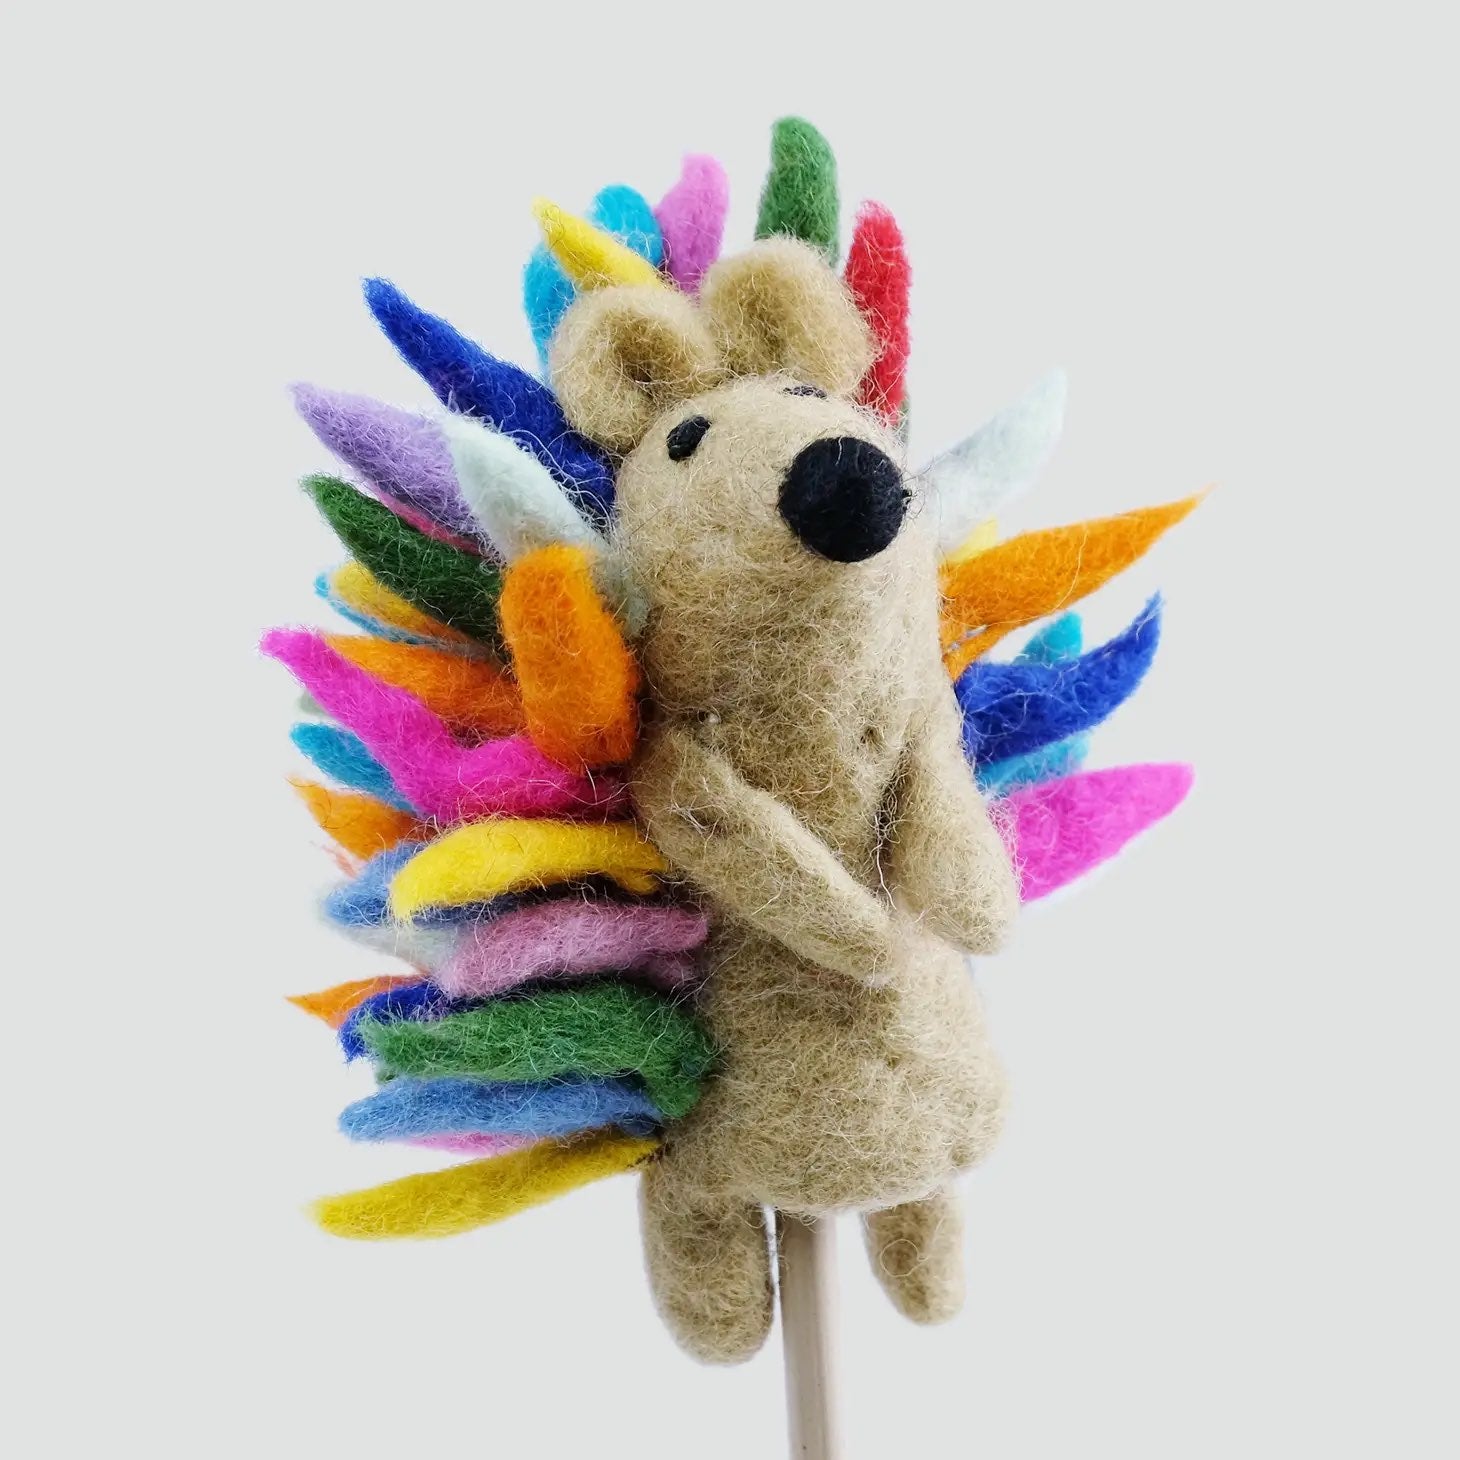 Felt Puppet Making Kit Party Supplies for Kids Art Craft Felt Sock